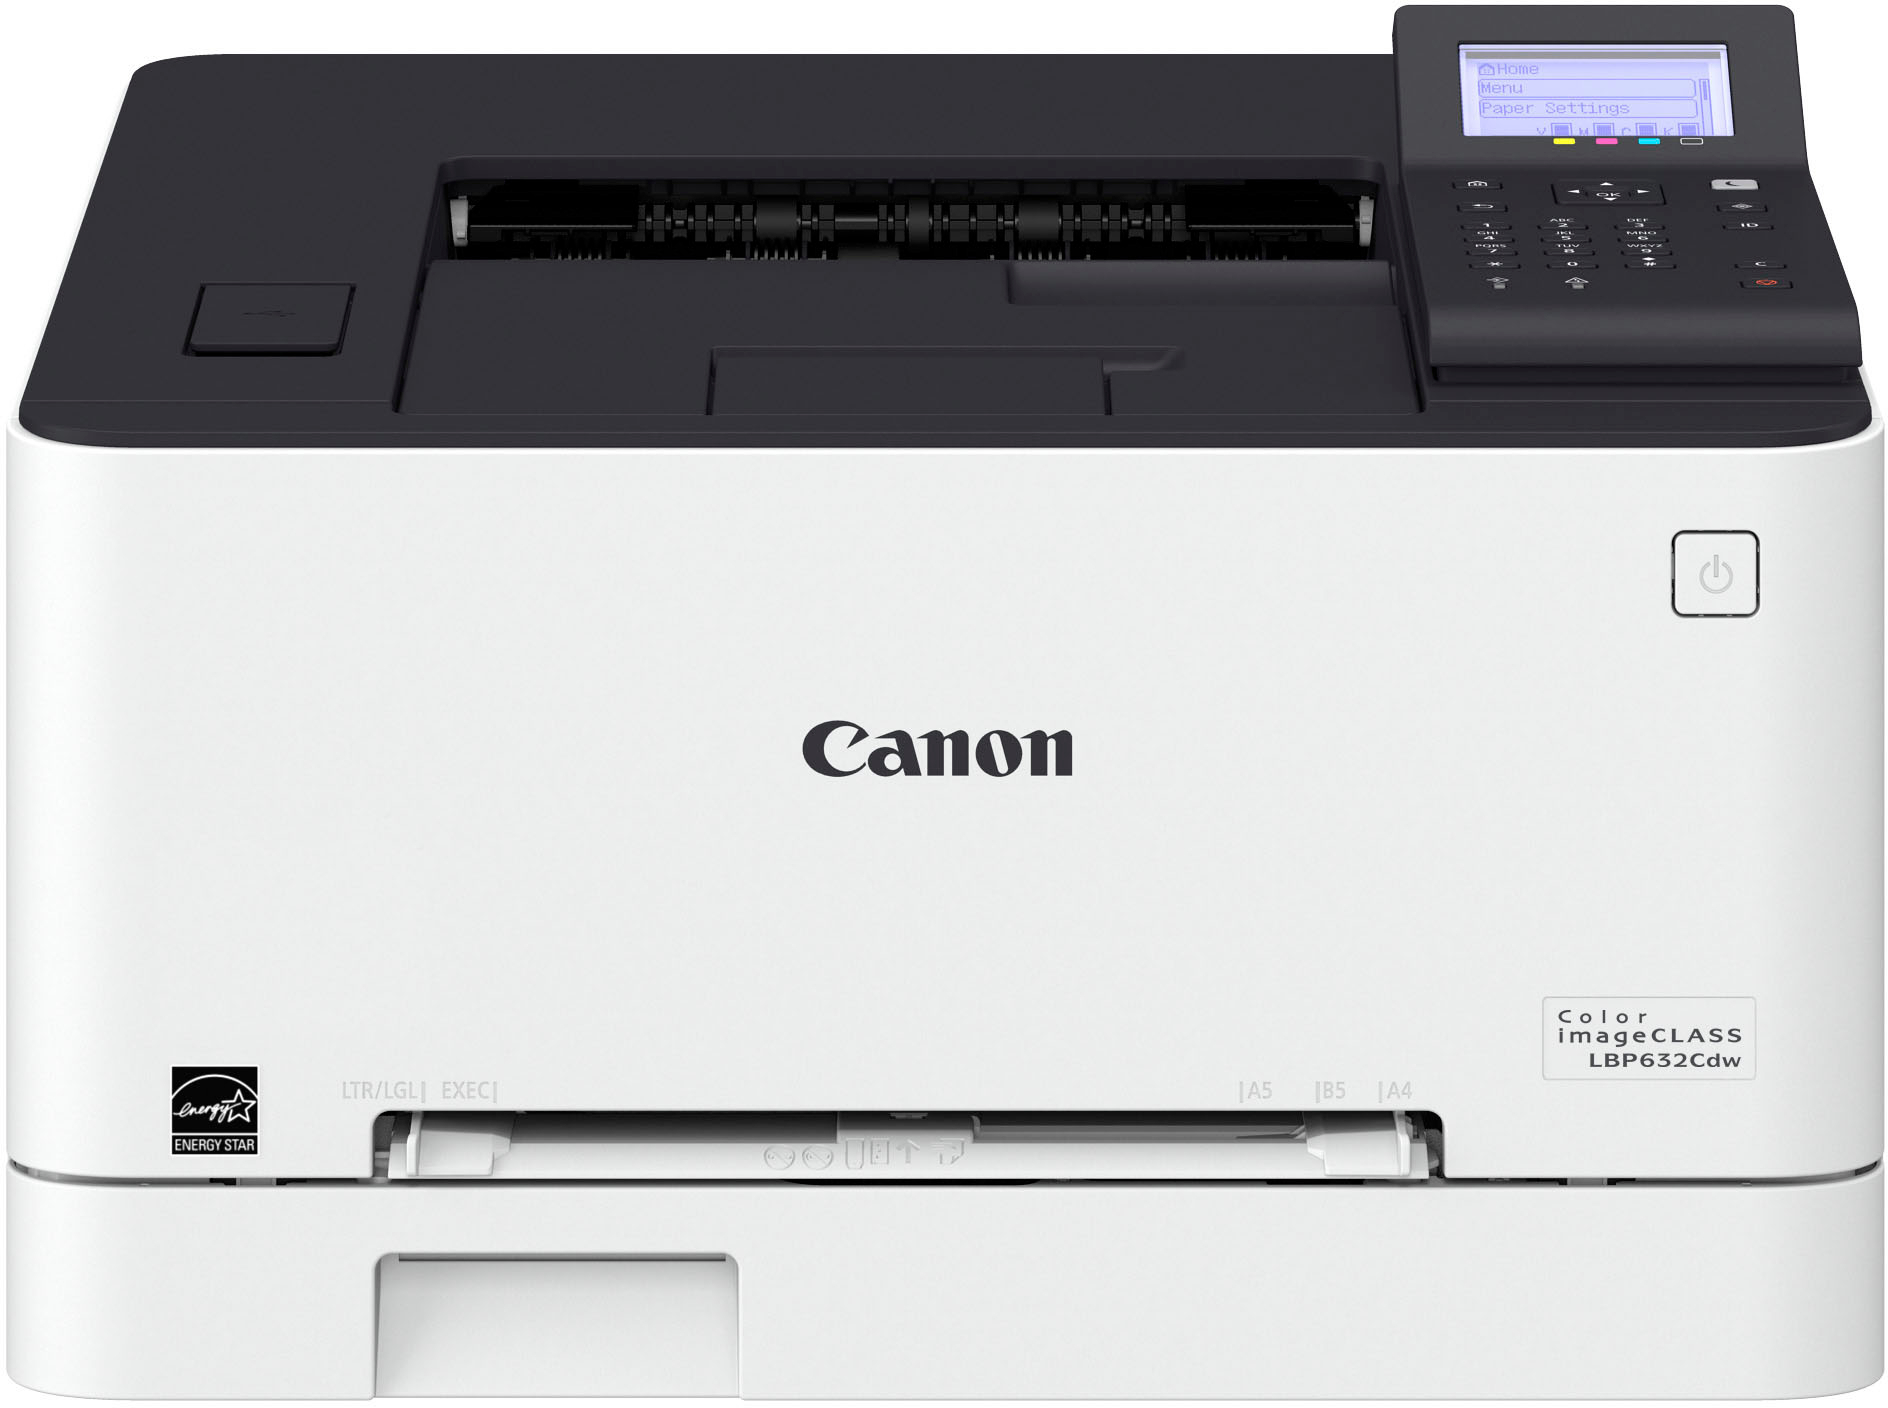 Canon imageCLASS LBP6030w - Monochrome, Compact Wireless Laser Printer,  White